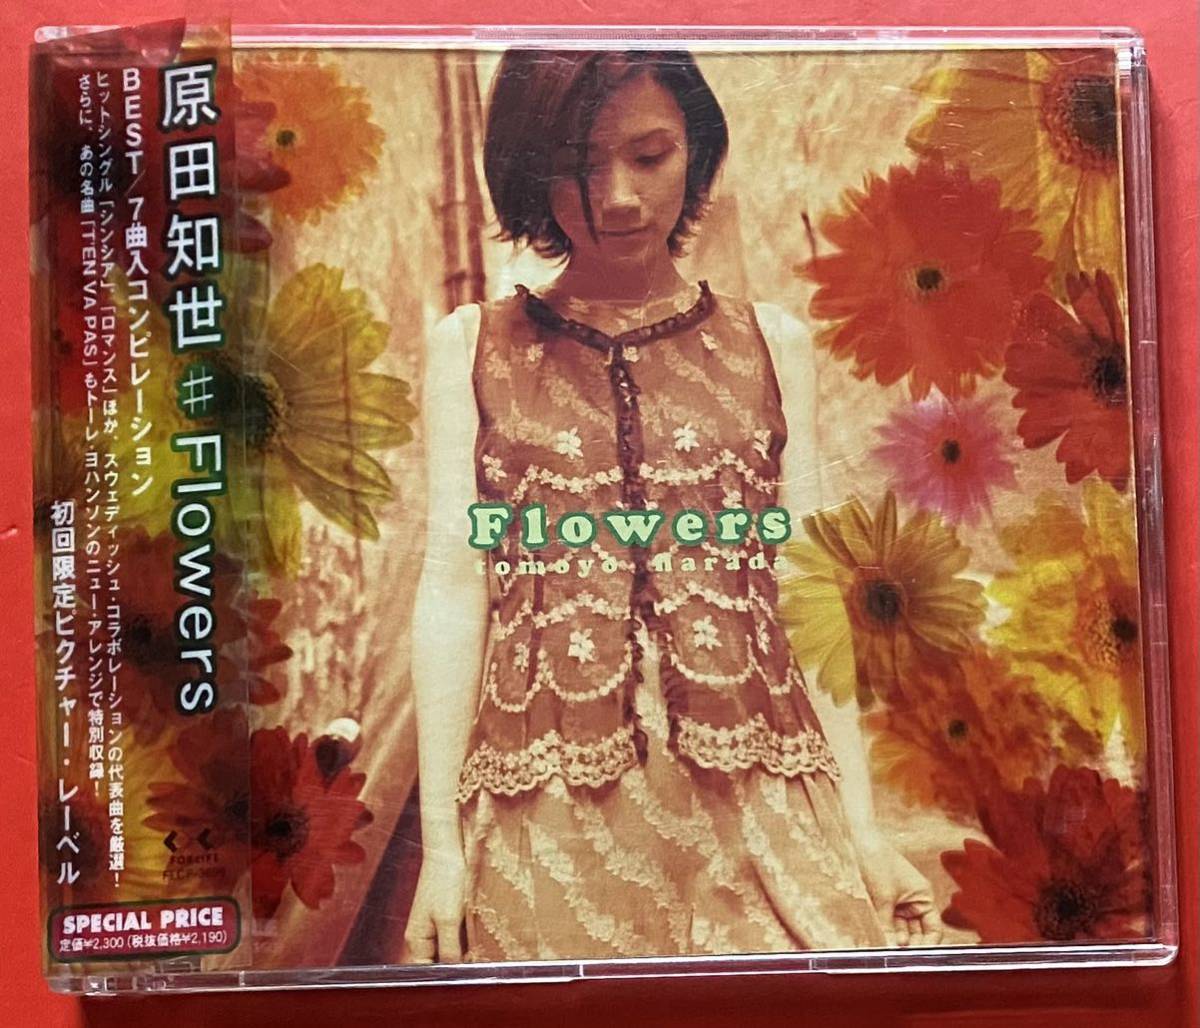 [CD] Harada Tomoyo [Flowers]TOMOYO HARADA первый раз ограничение запись [11190518]